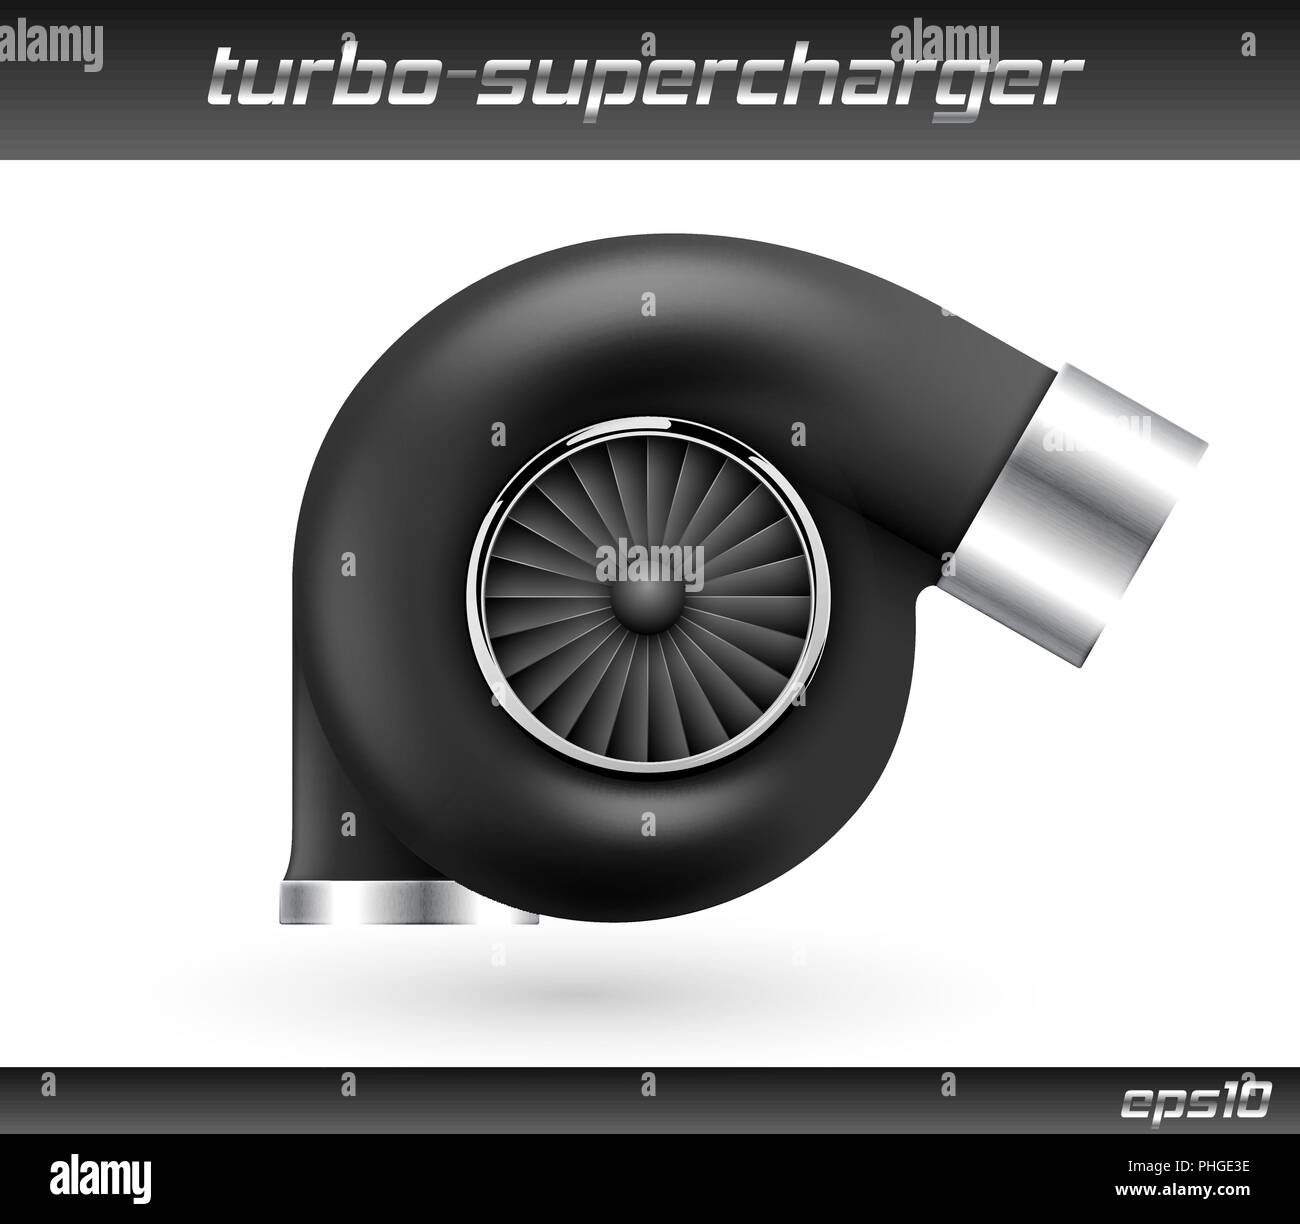 Turbocompresseur voiture vecteur isolé sur fond blanc. L'icône de la turbine noir réaliste. Tuning turbo superchardger Illustration de Vecteur